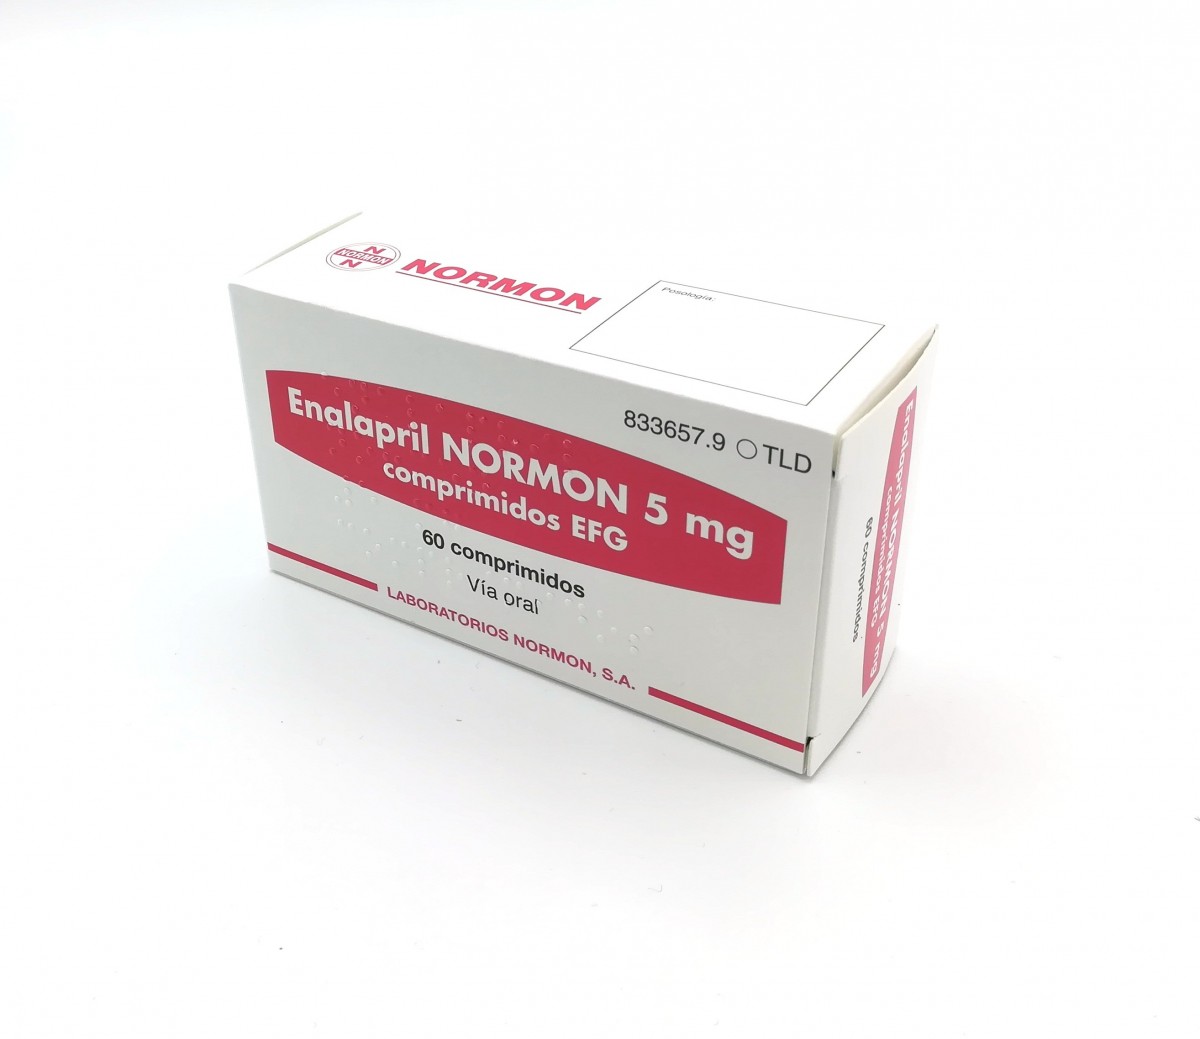 ENALAPRIL NORMON 5 mg  COMPRIMIDOS EFG, 10 comprimidos fotografía del envase.